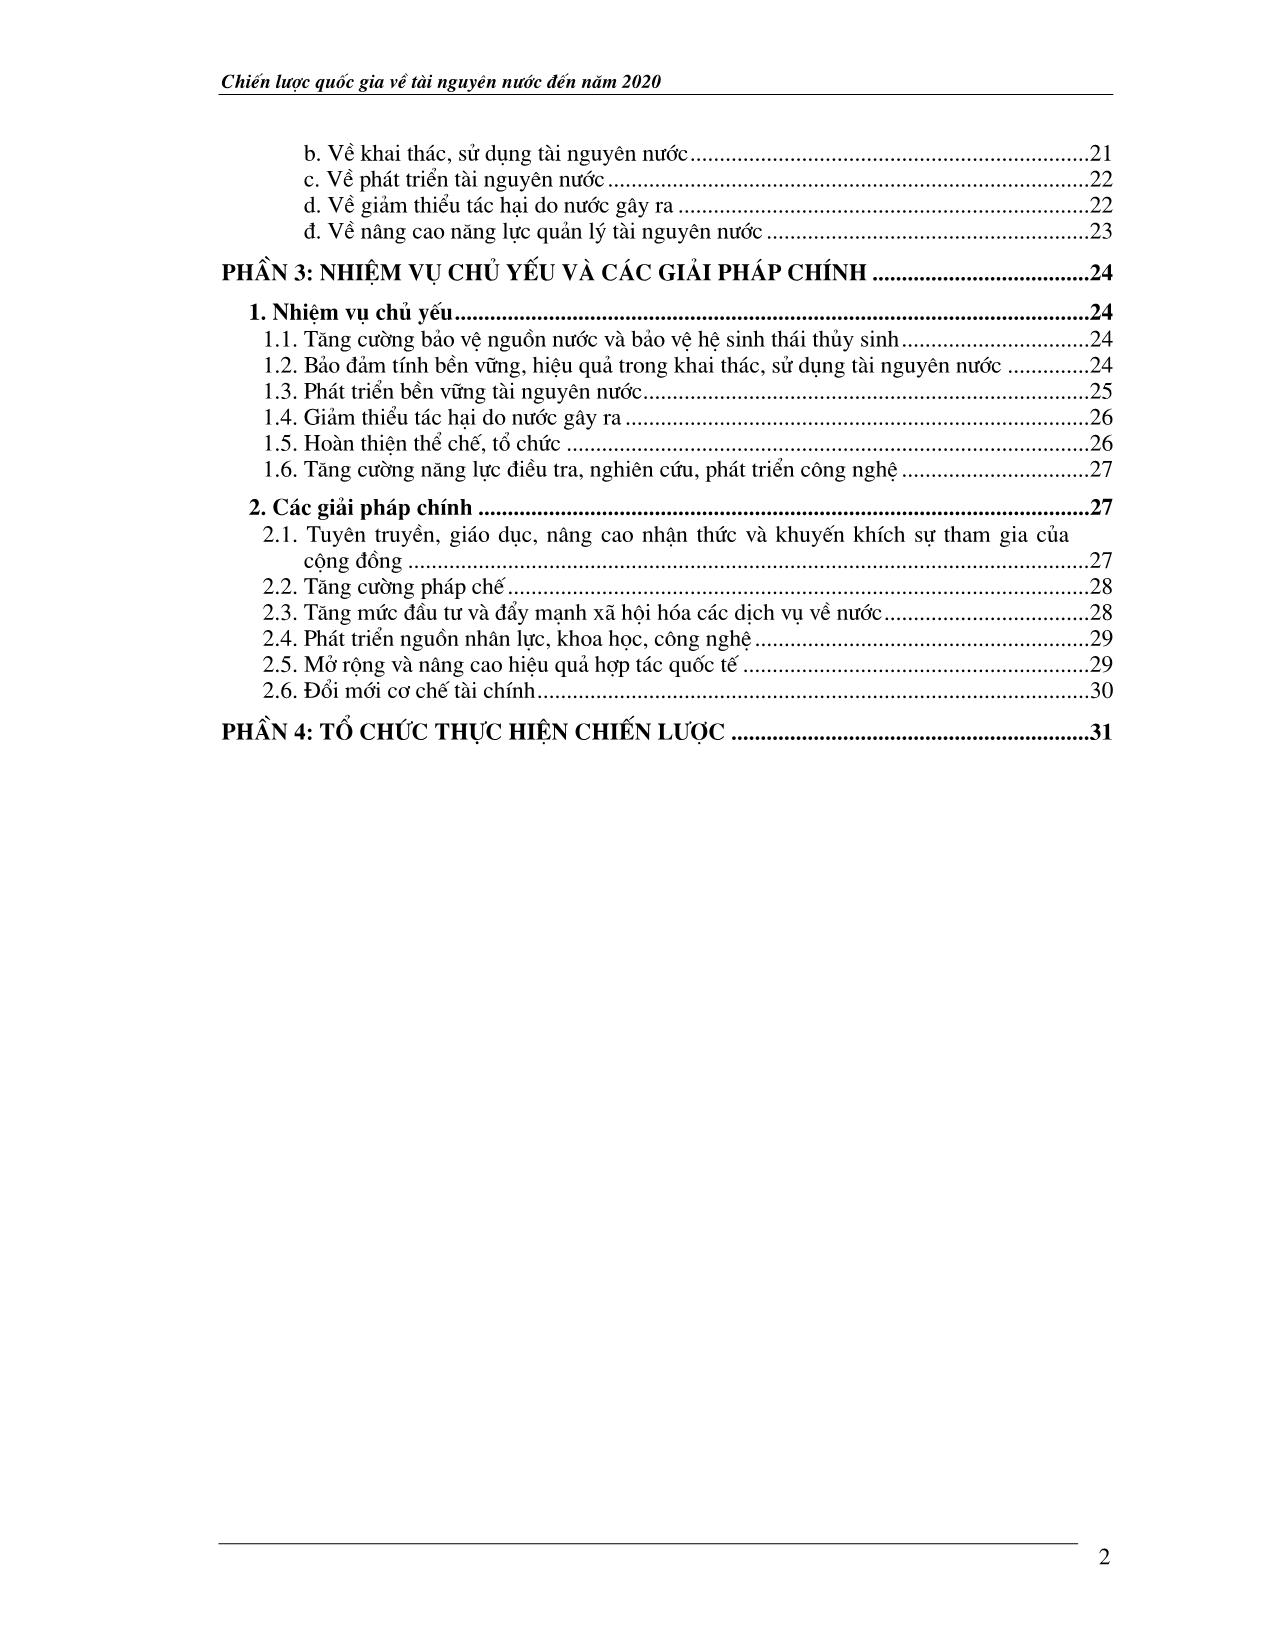 Luận văn Hiến lược quốc gia về tài nguyên nước đến năm 2010 trang 3